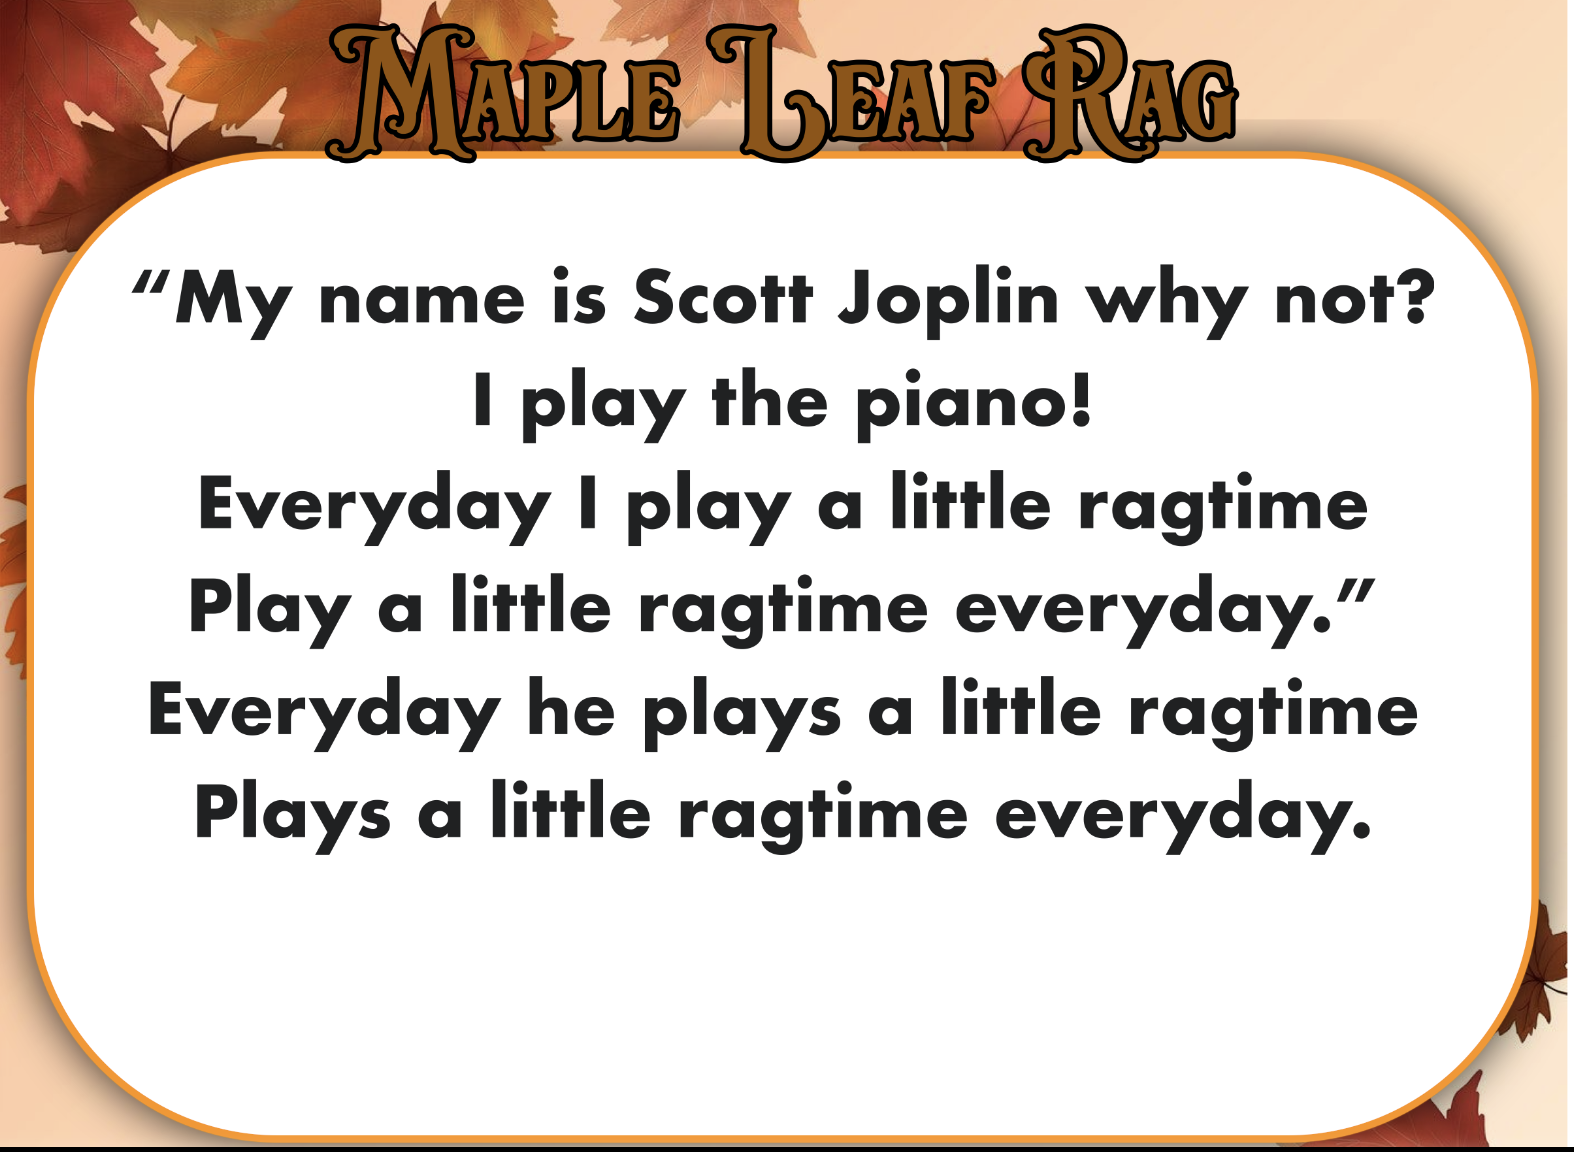 Maple leaf rag lyrics